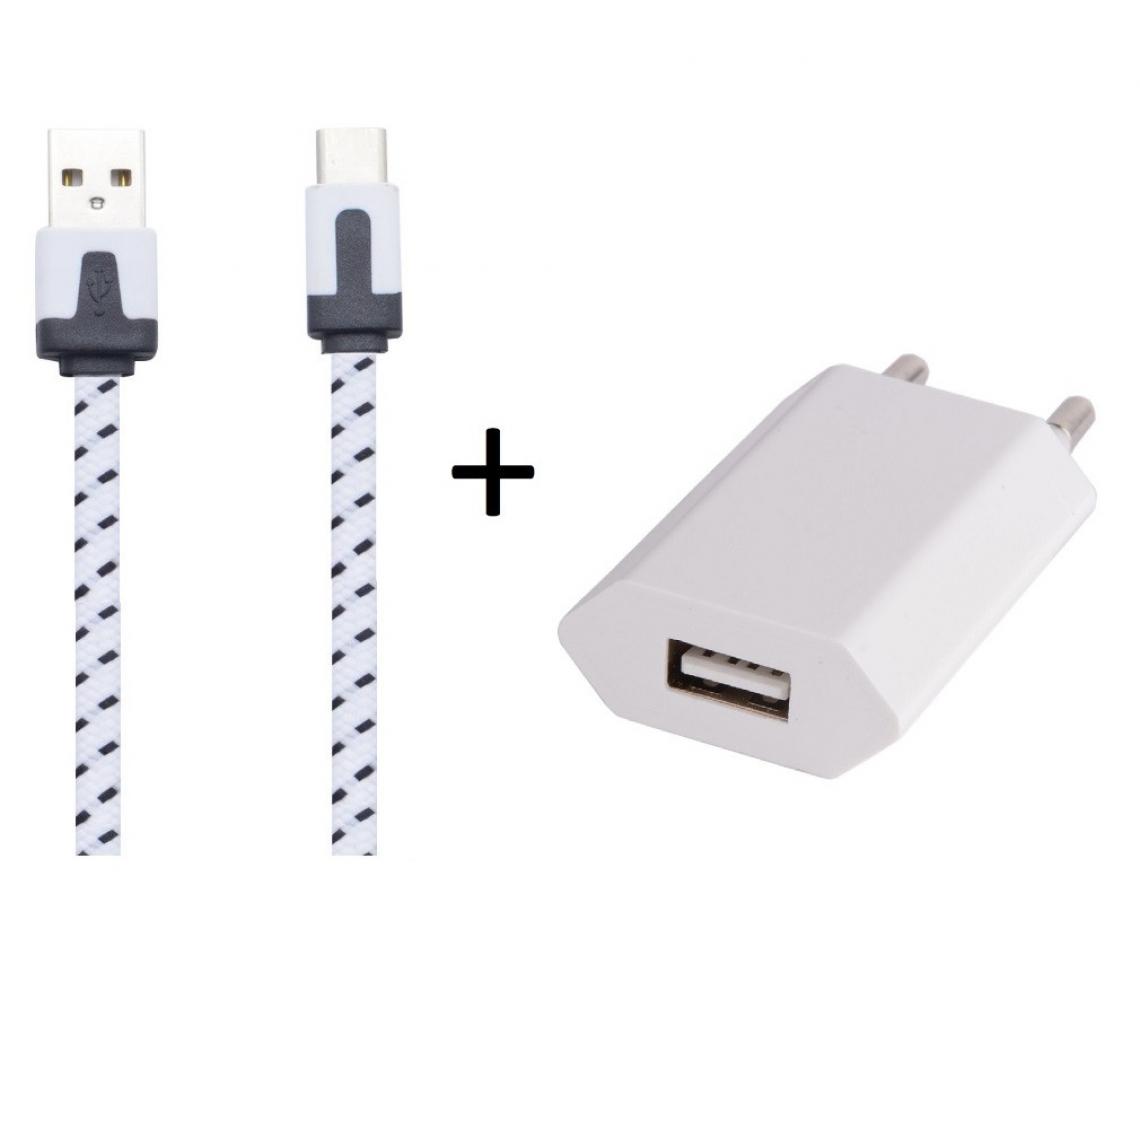 Shot - Pack Chargeur pour "OPPO Find X2 Lite" Smartphone Type C (Cable Noodle 1m Chargeur + Prise Secteur USB) Murale Android (BLANC) - Chargeur secteur téléphone